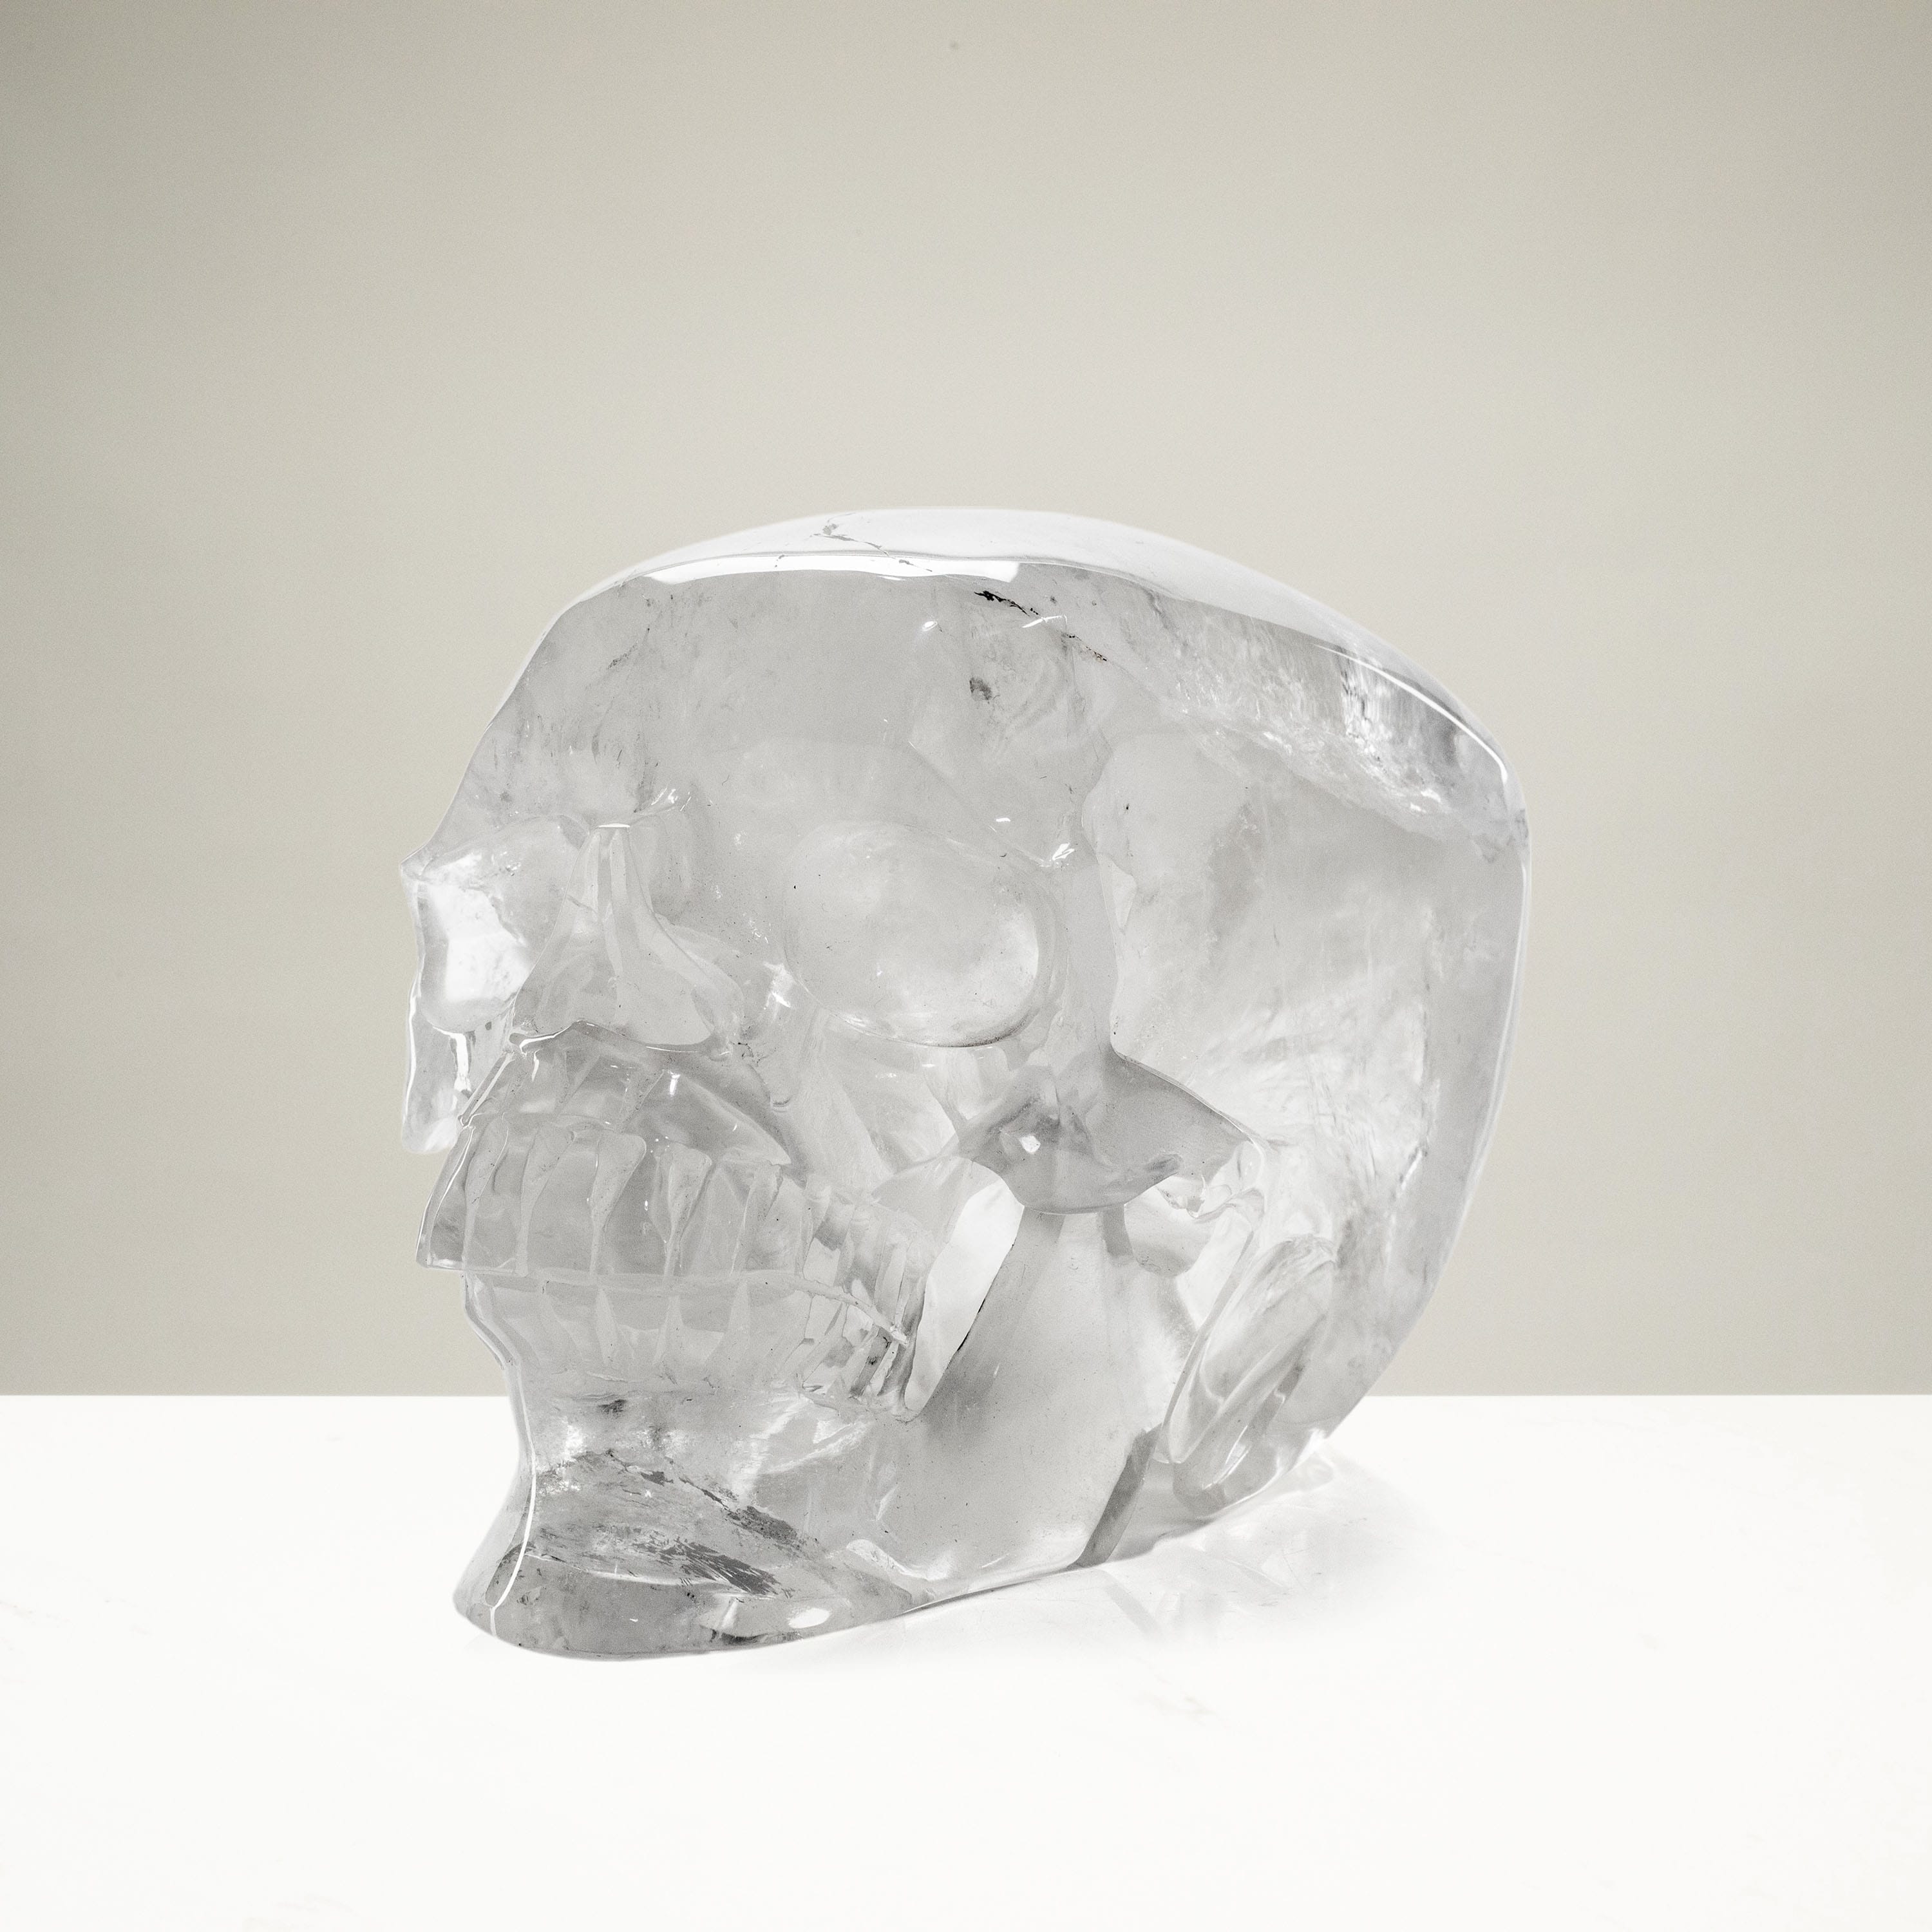 Kalifano Quartz Quartz Skull Carving 5.5" / 2,100g SK5600-QZ.001